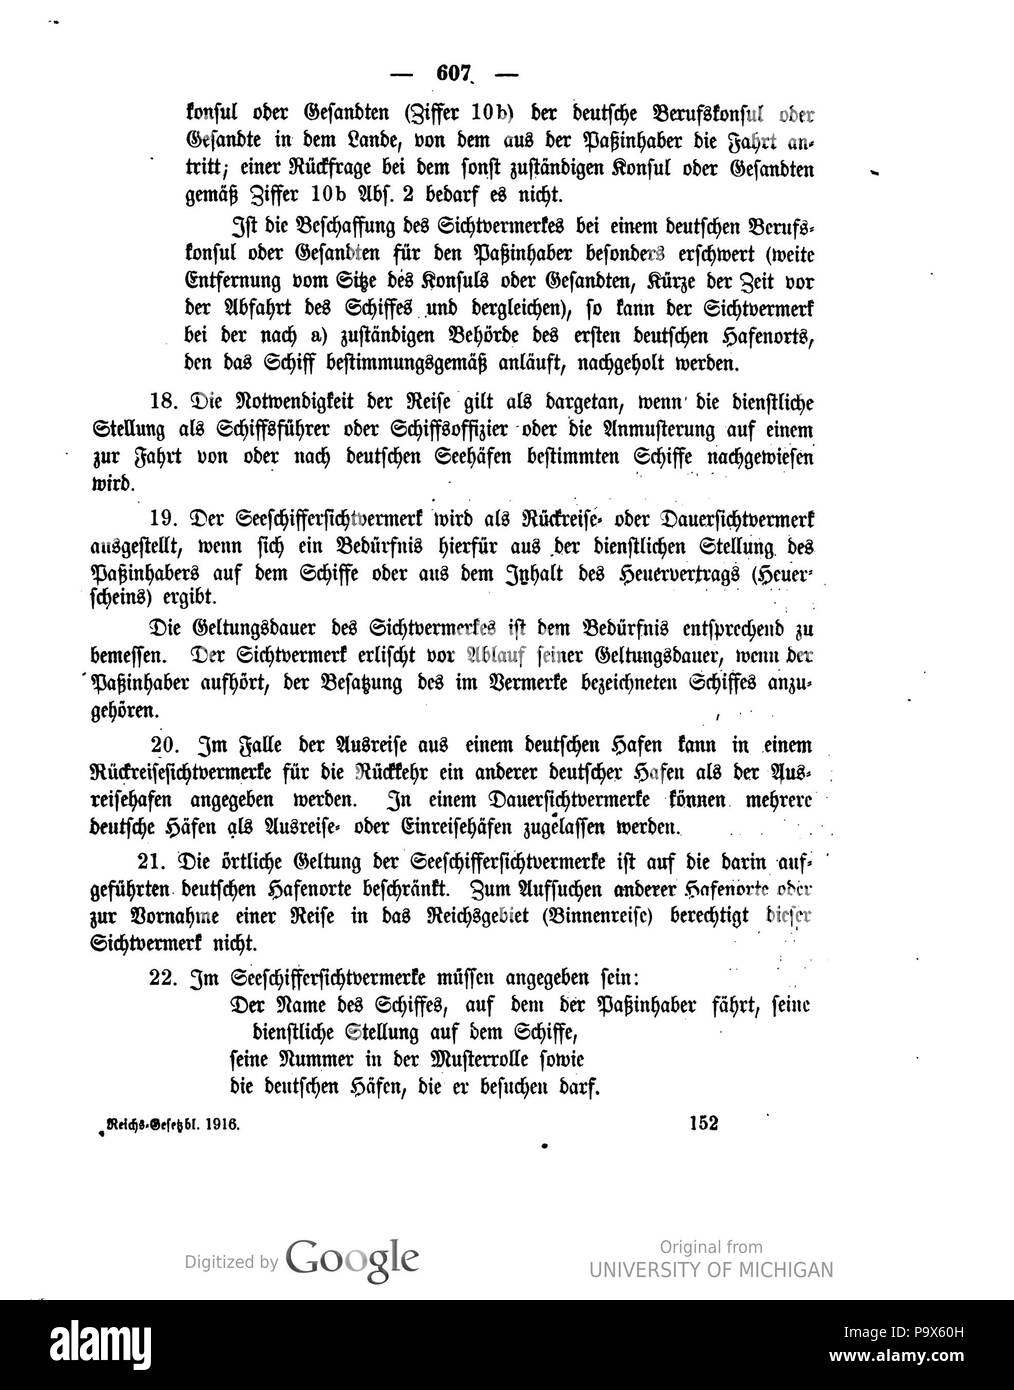 466 Deutsches Reichsgesetzblatt 1916 143 0607 Foto Stock